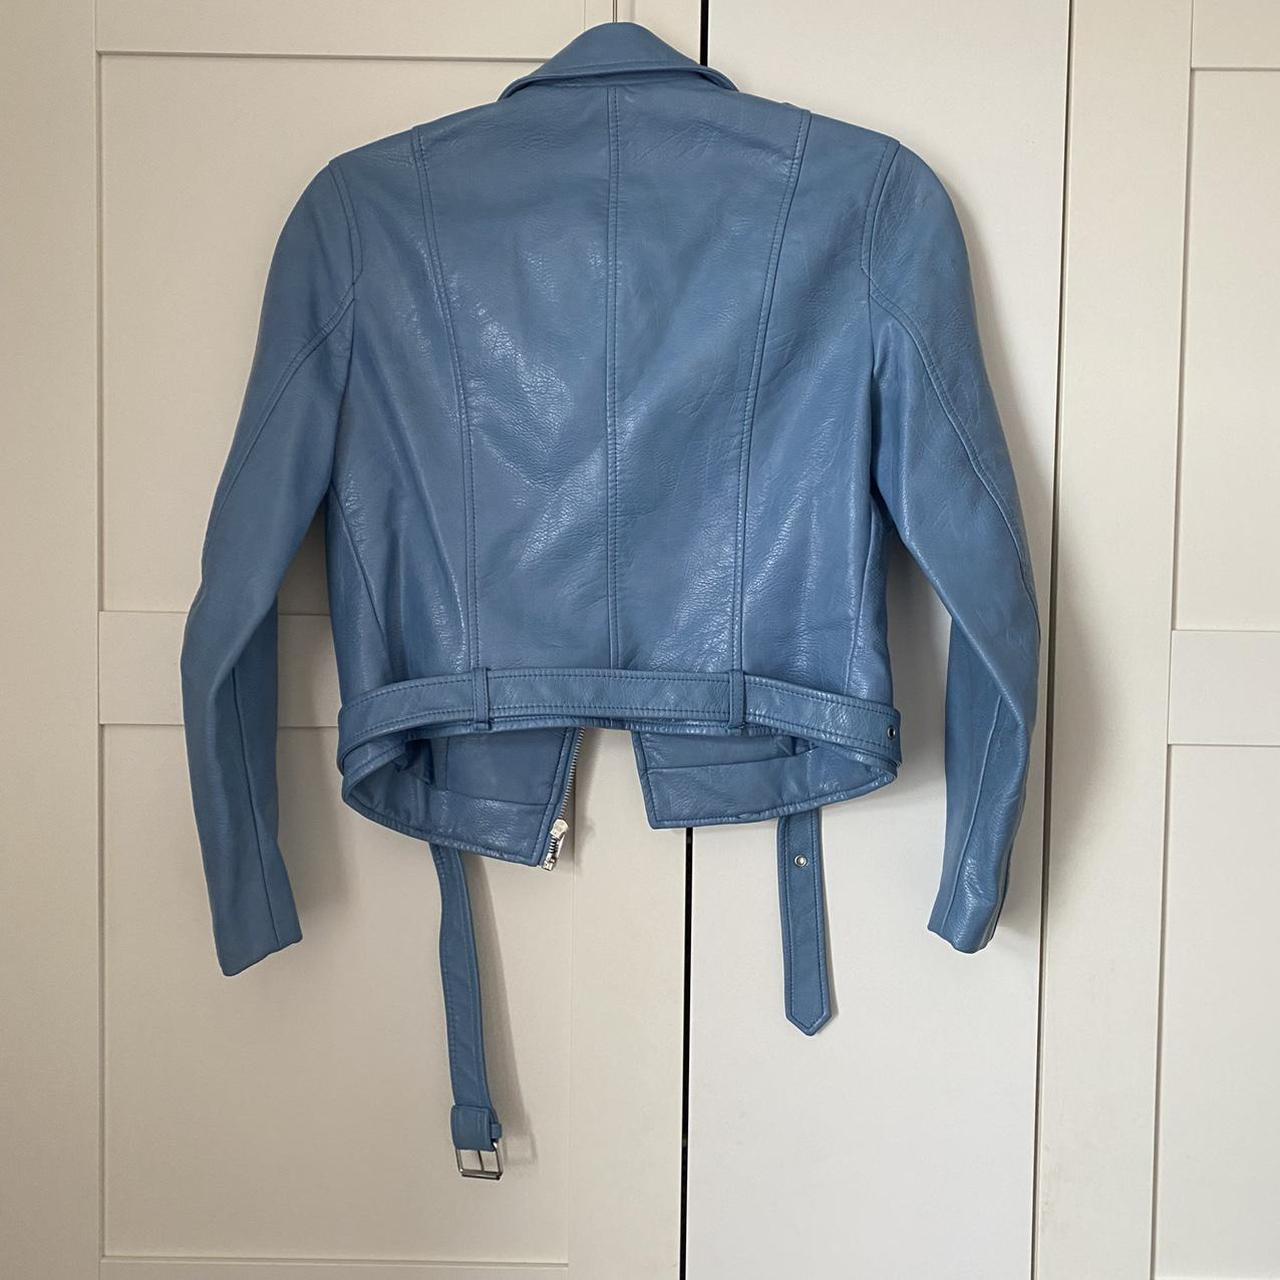 Zara faux leather jacket Blue biker jacket Silver... - Depop